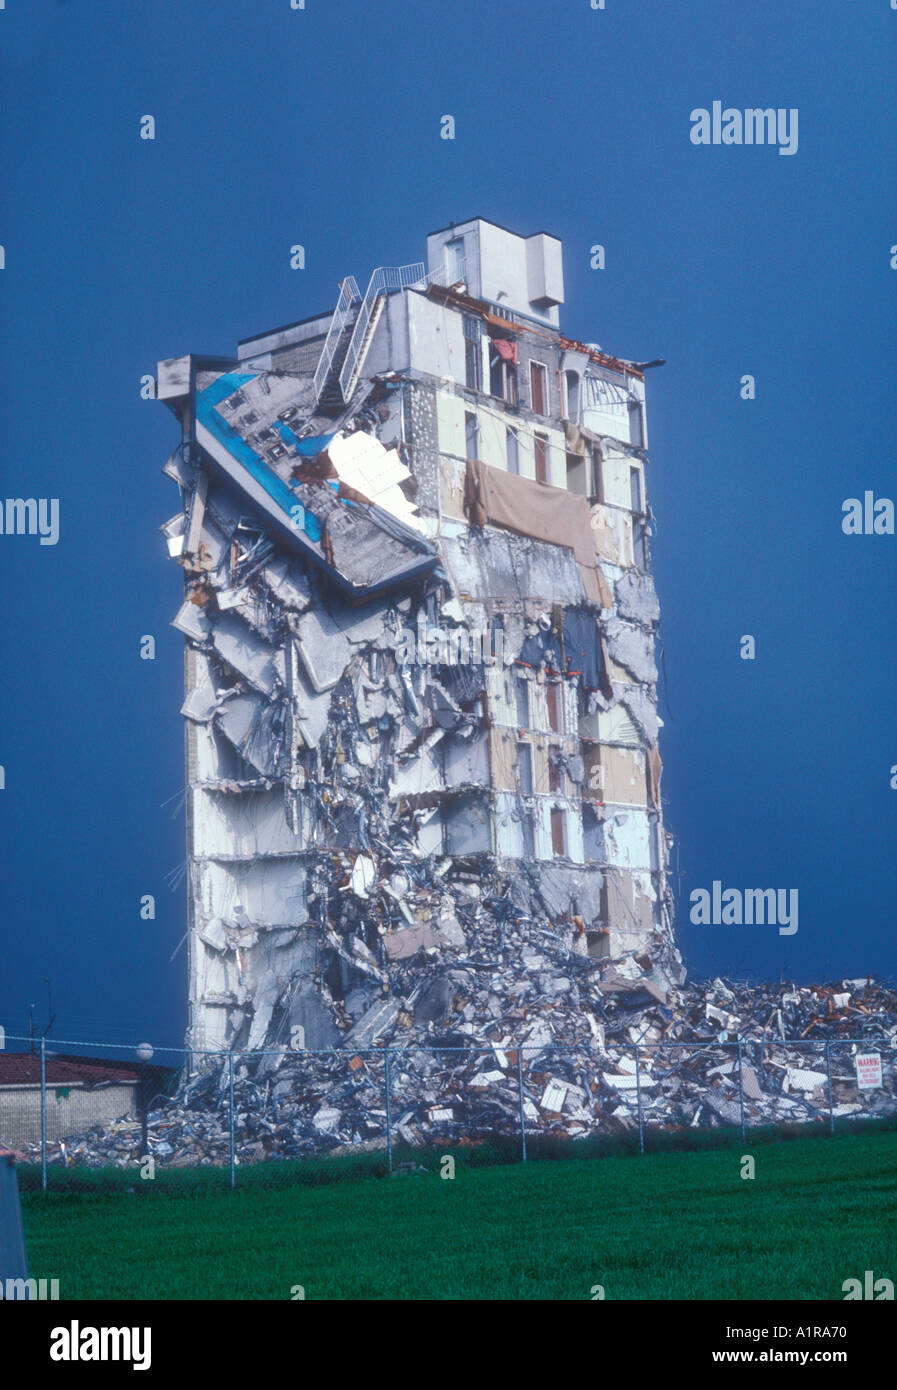 Condo de 12 étages d'être démoli en raison de problèmes de construction Banque D'Images